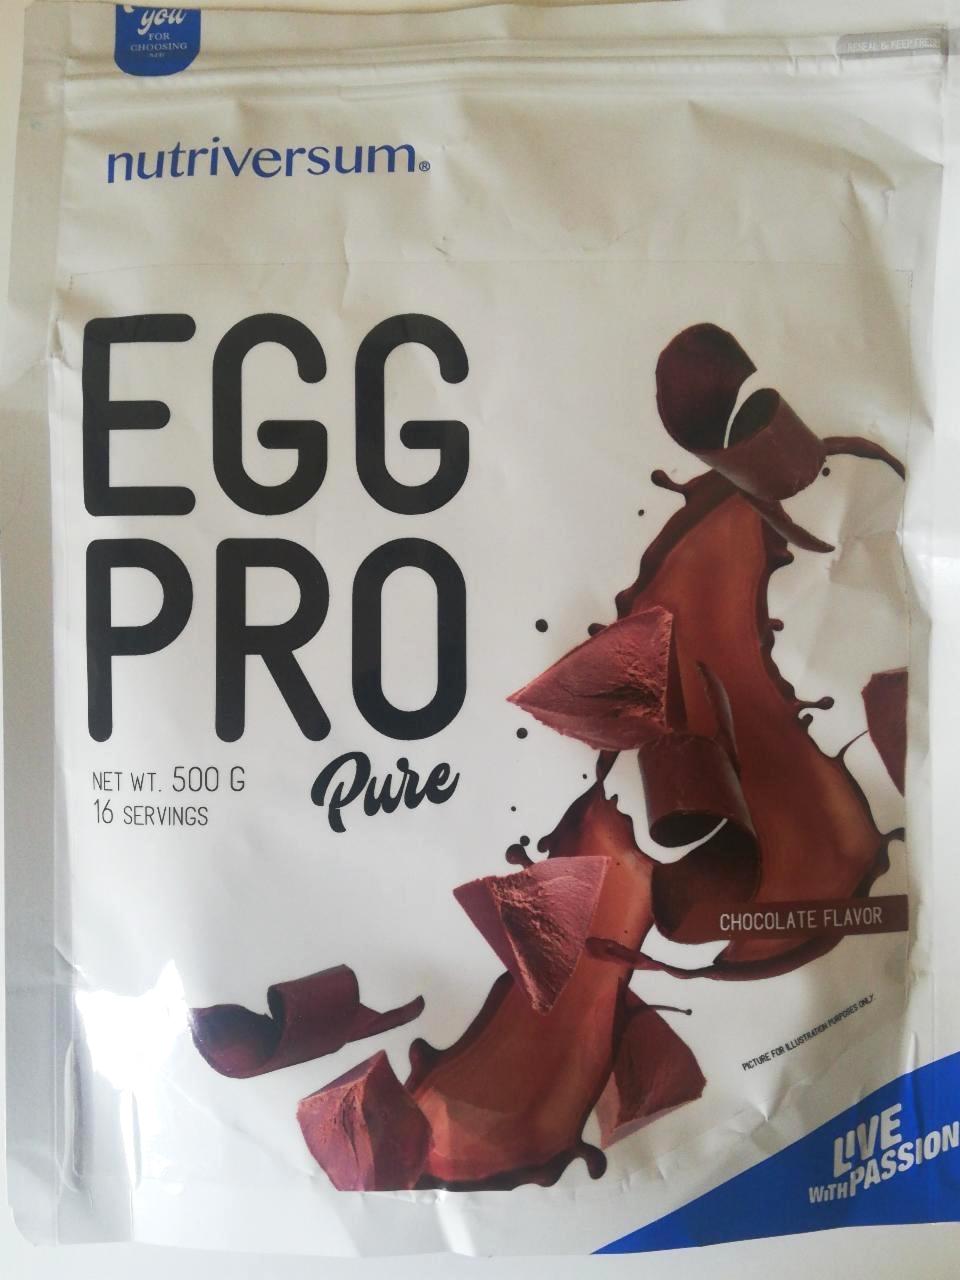 Képek - Egg Pro Csokoládé ízű Nutriversum